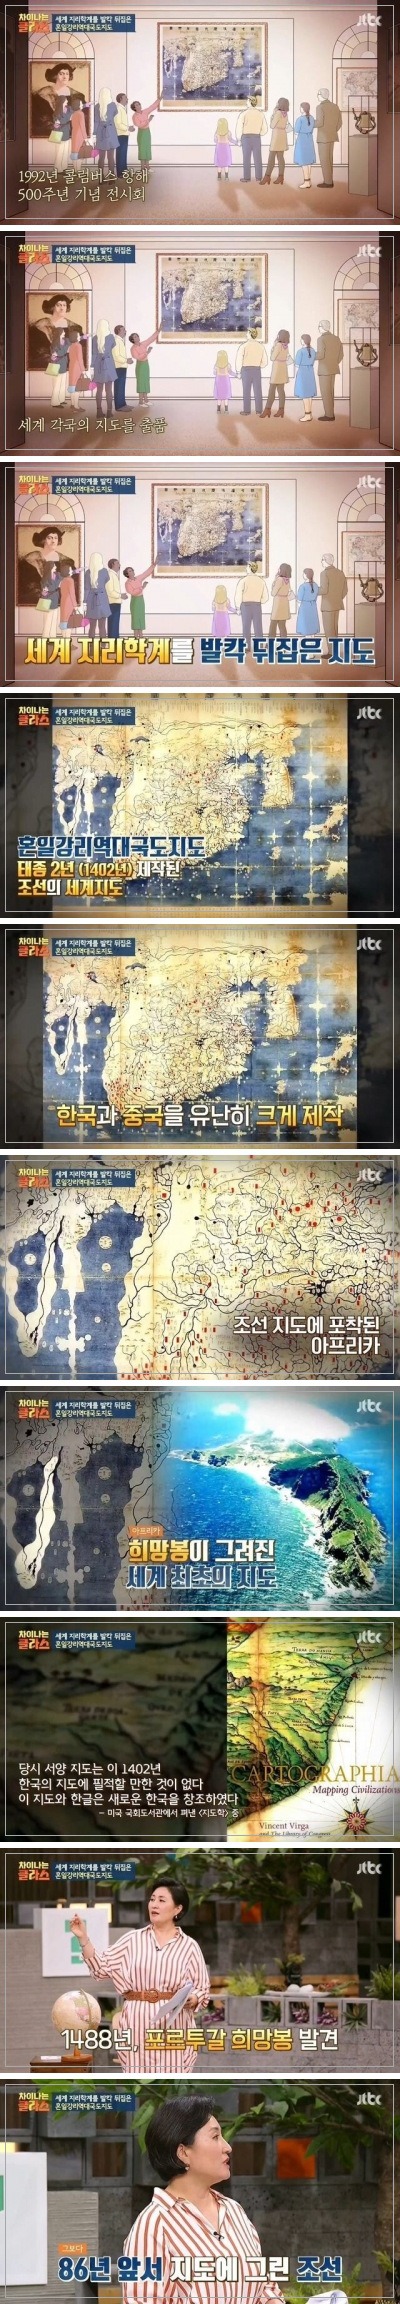 세계 지리학계를 뒤집은 한국의 지도